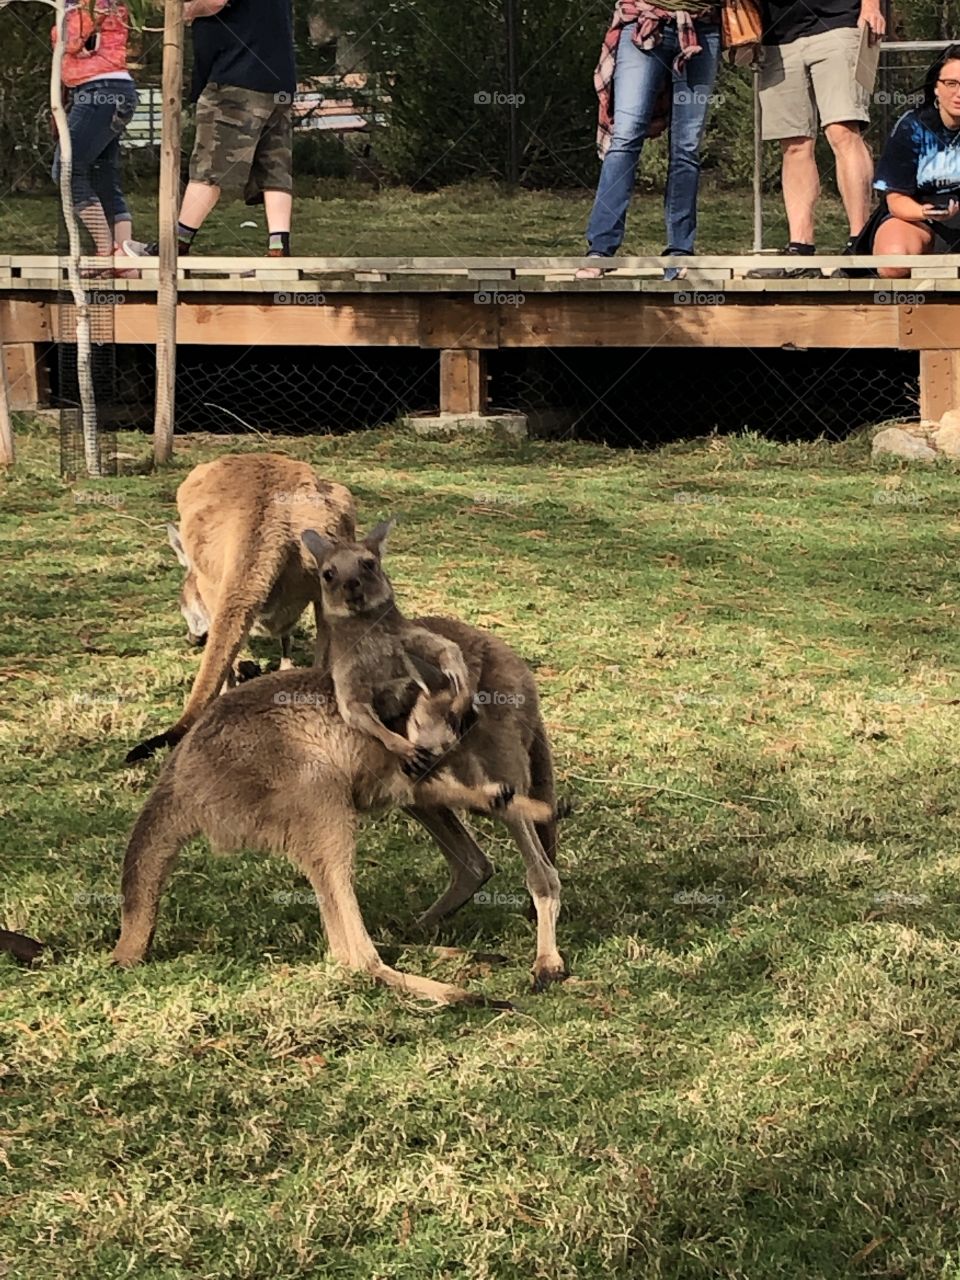 Kangaroo fight 